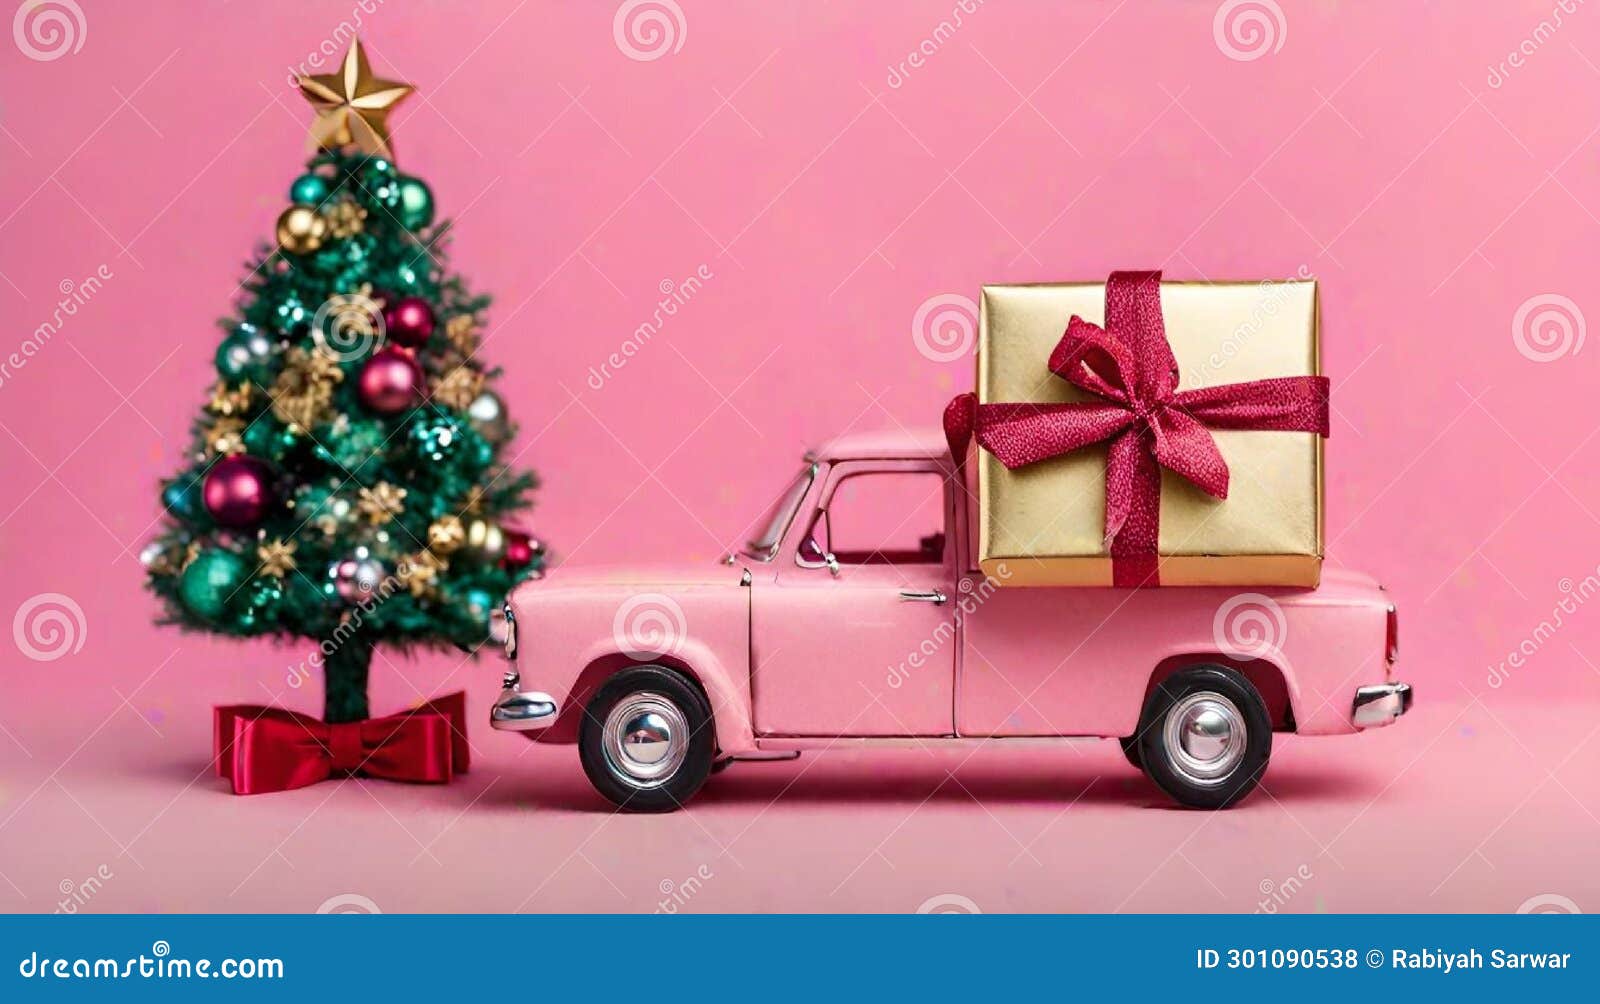 carrito de la compra en miniatura con regalos y Ãrbol de navidad, acompaÃ±ado de una estrella dorada sobre fondo rosado